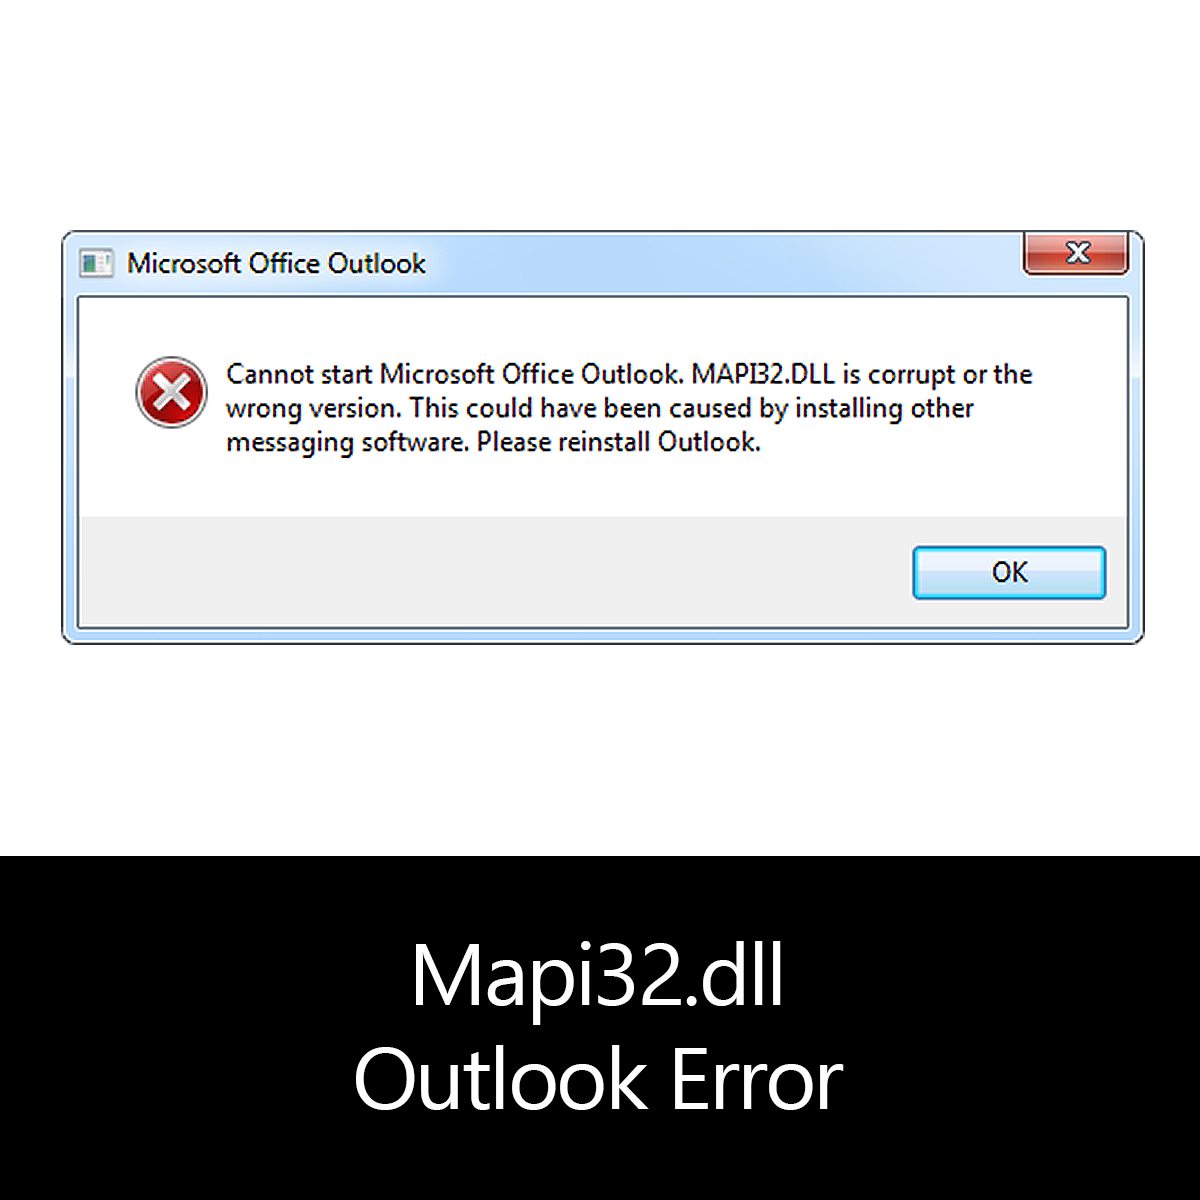 Impossible de démarrer Outlook mapi32.dll corrompu